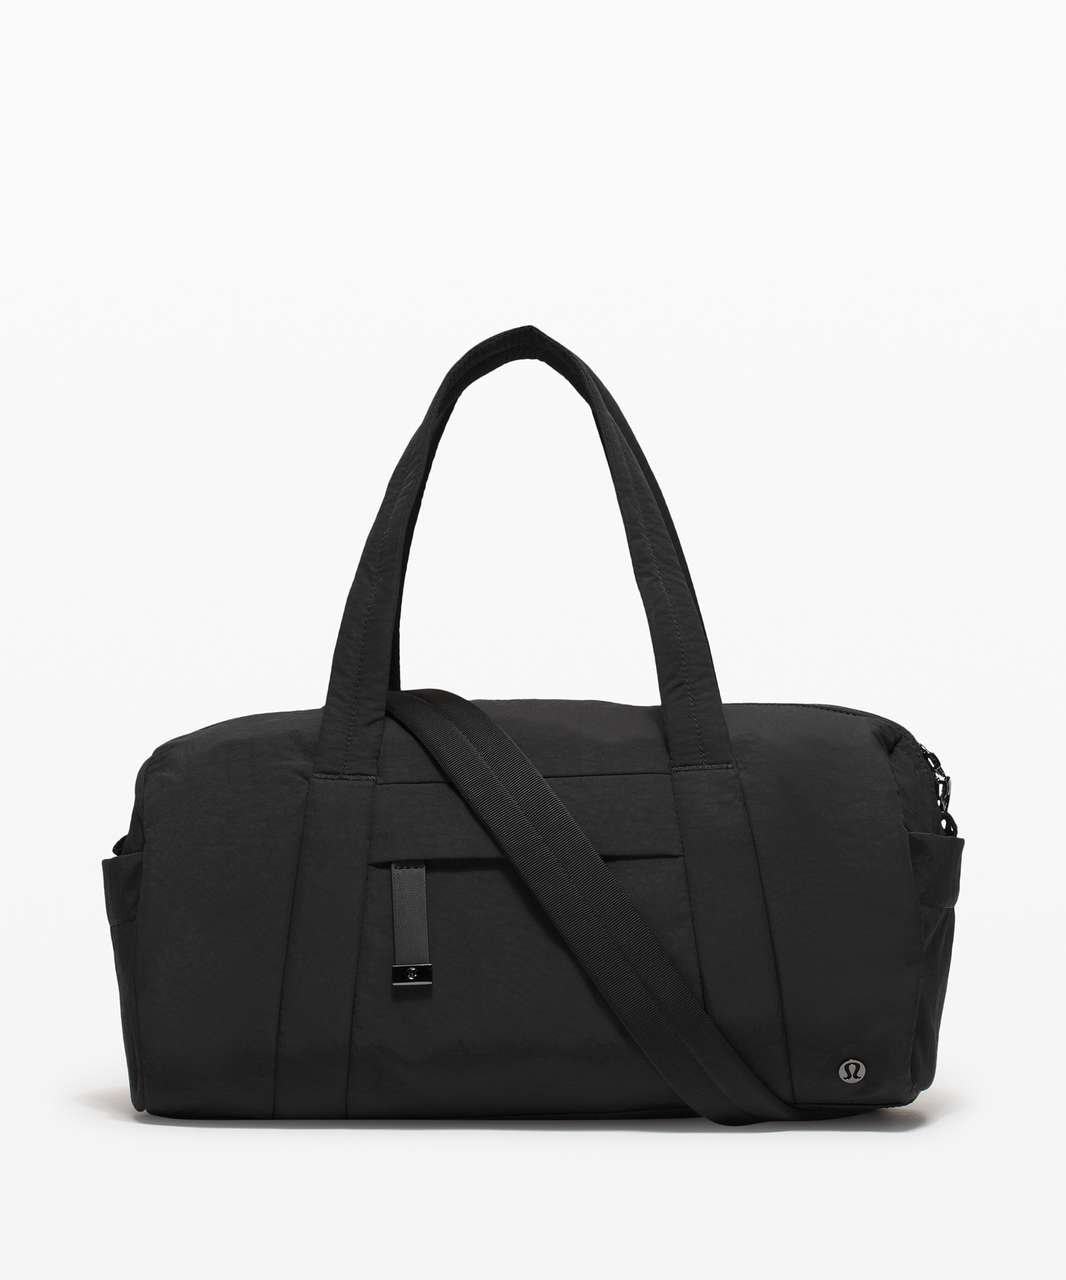 Lululemon On My Level Barrel Bag *16L - Black